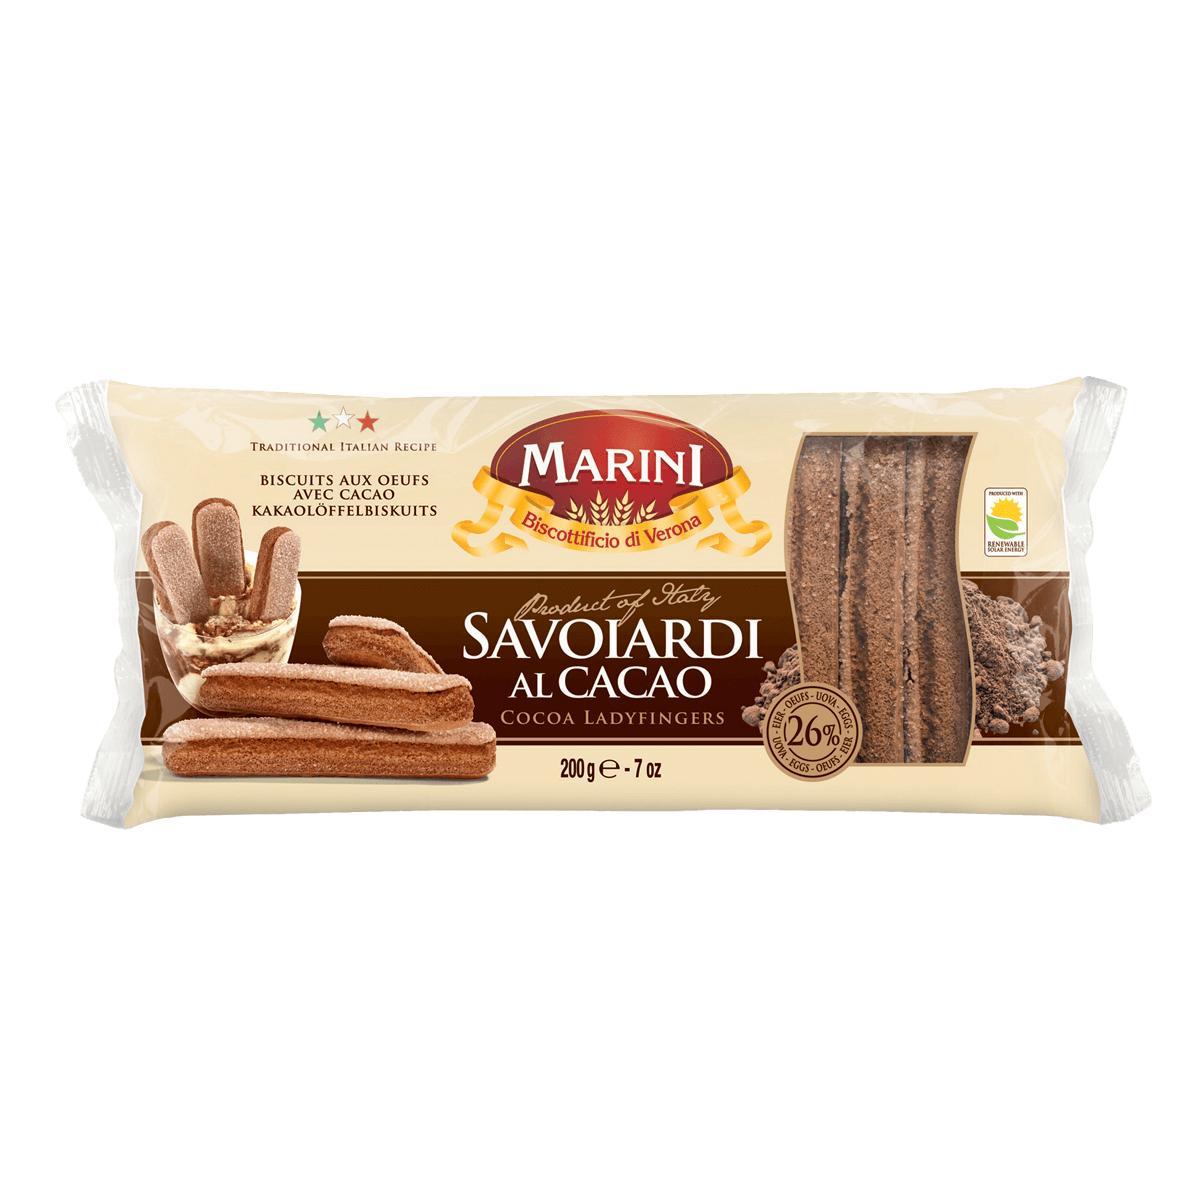 Печенье Marini Савоярди с какао 200 гр., флоу-пак